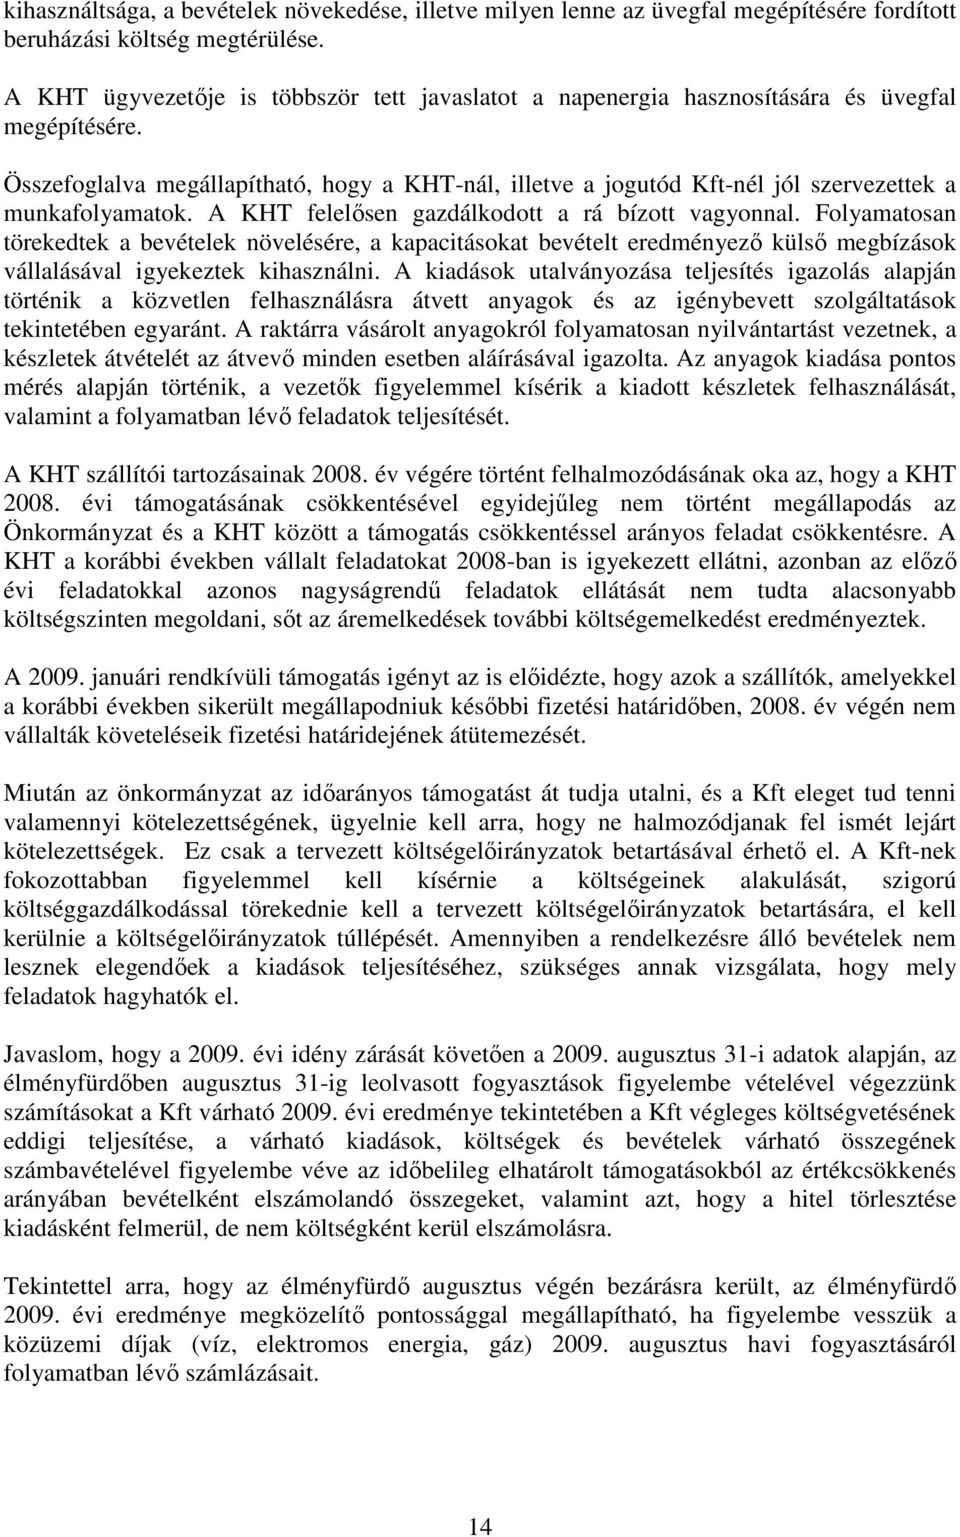 Összefoglalva megállapítható, hogy a KHT-nál, illetve a jogutód Kft-nél jól szervezettek a munkafolyamatok. A KHT felelısen gazdálkodott a rá bízott vagyonnal.